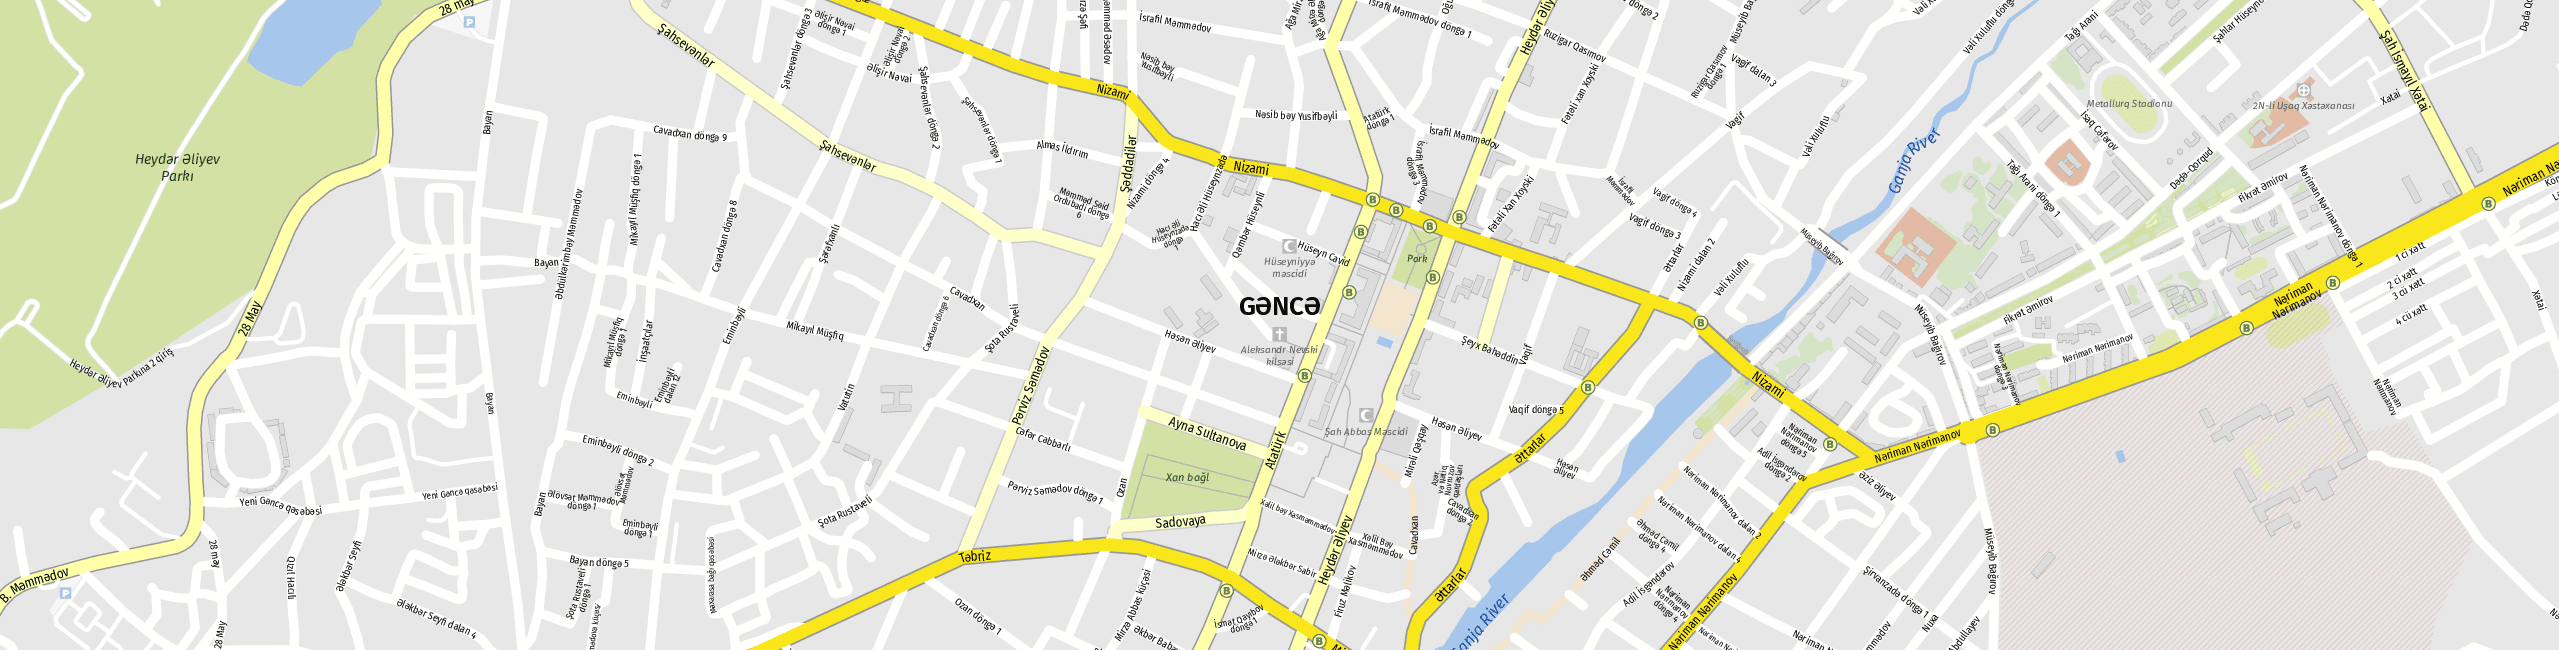 Stadtplan Gandscha zum Downloaden.